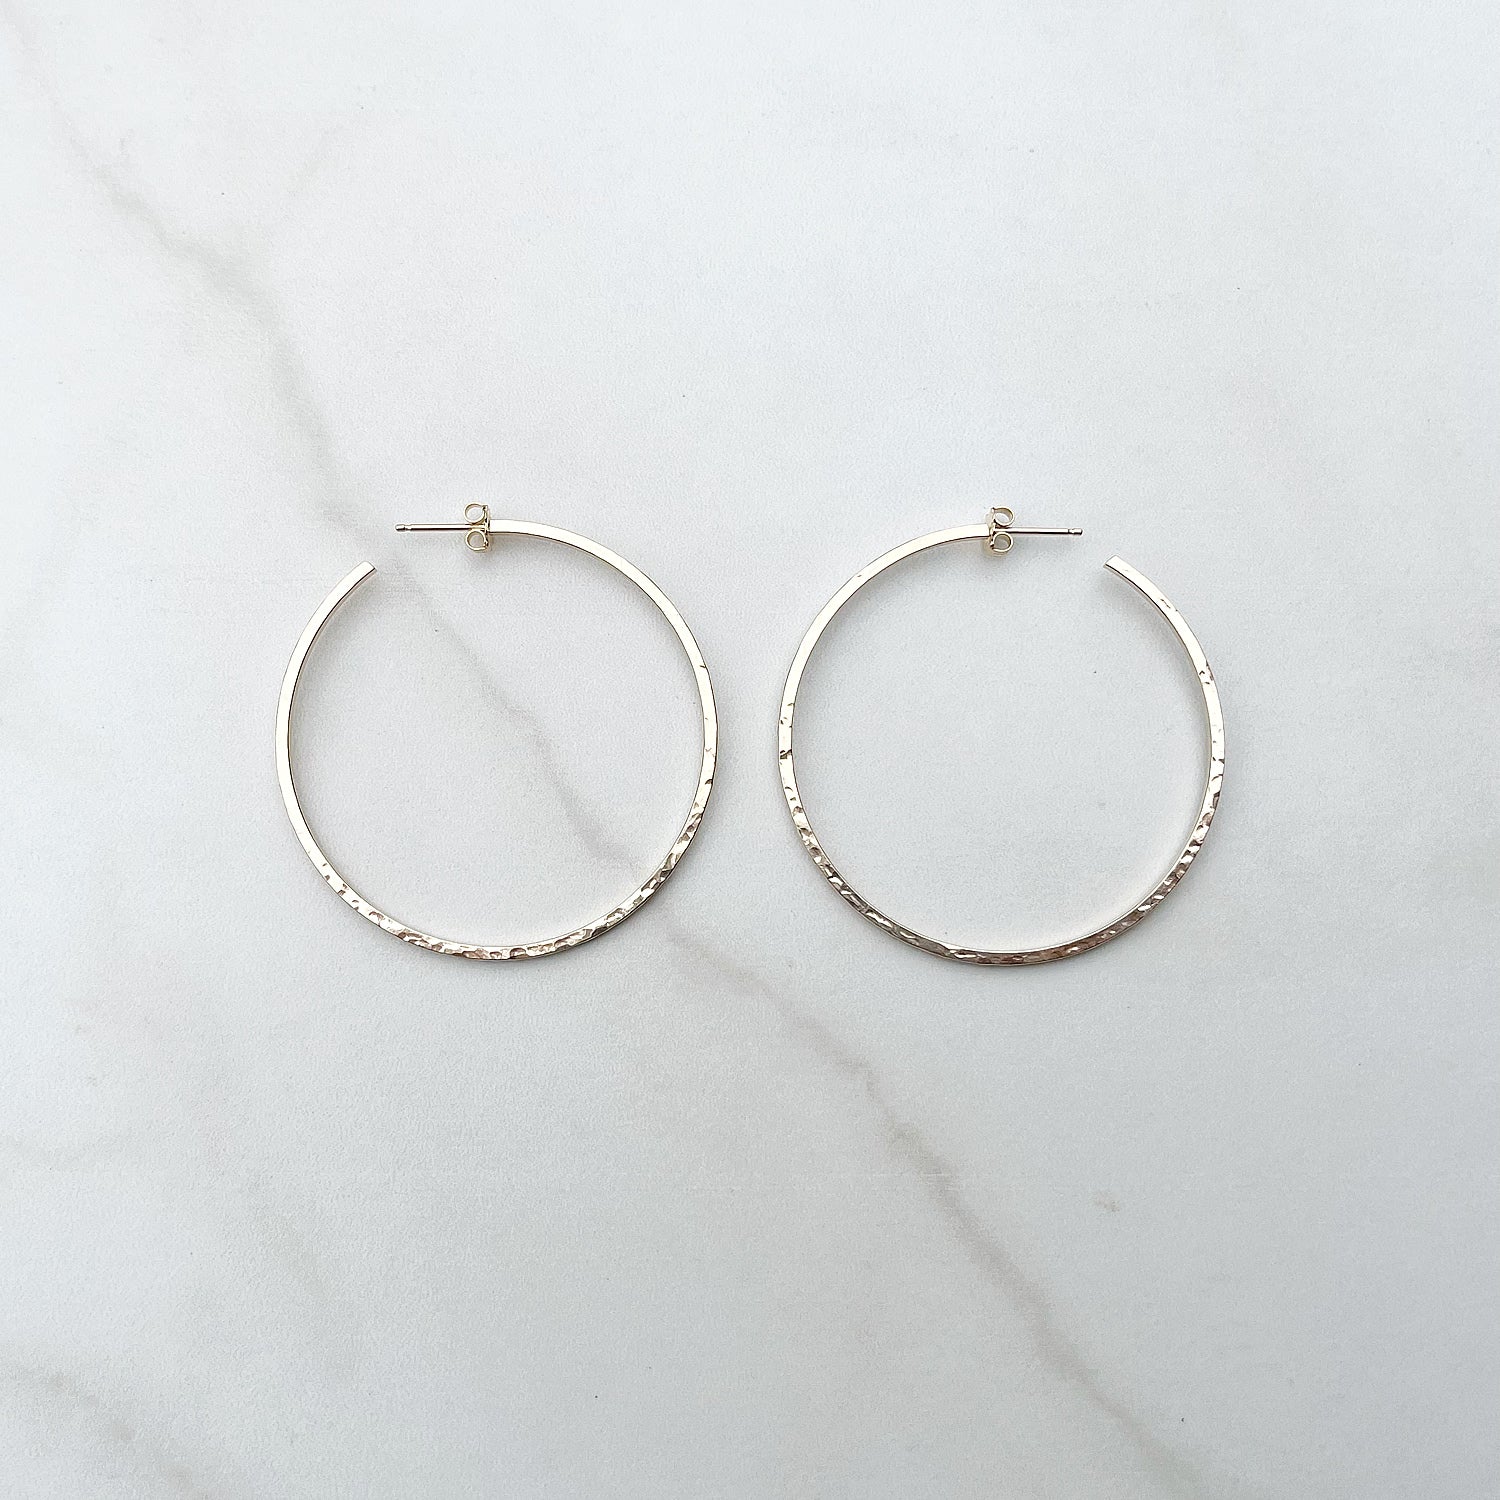 Buy 925 Sterling Silver Hoop Earrings for kids, men, women | Simple &  stylish at Amazon.in